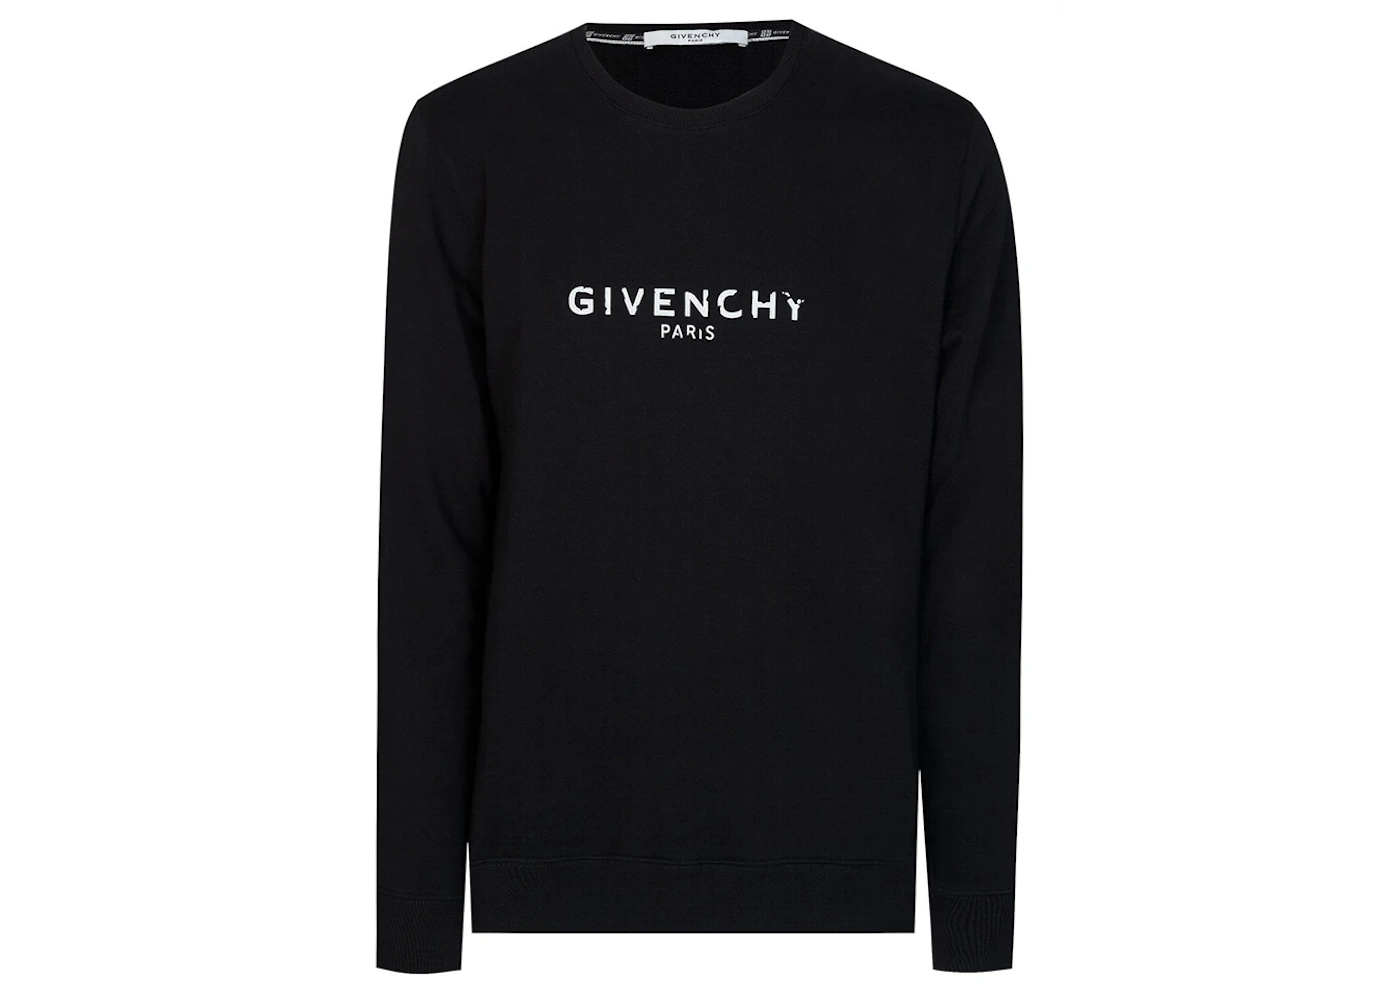 Givenchy Paris Logo Crewneck Black Men's - US